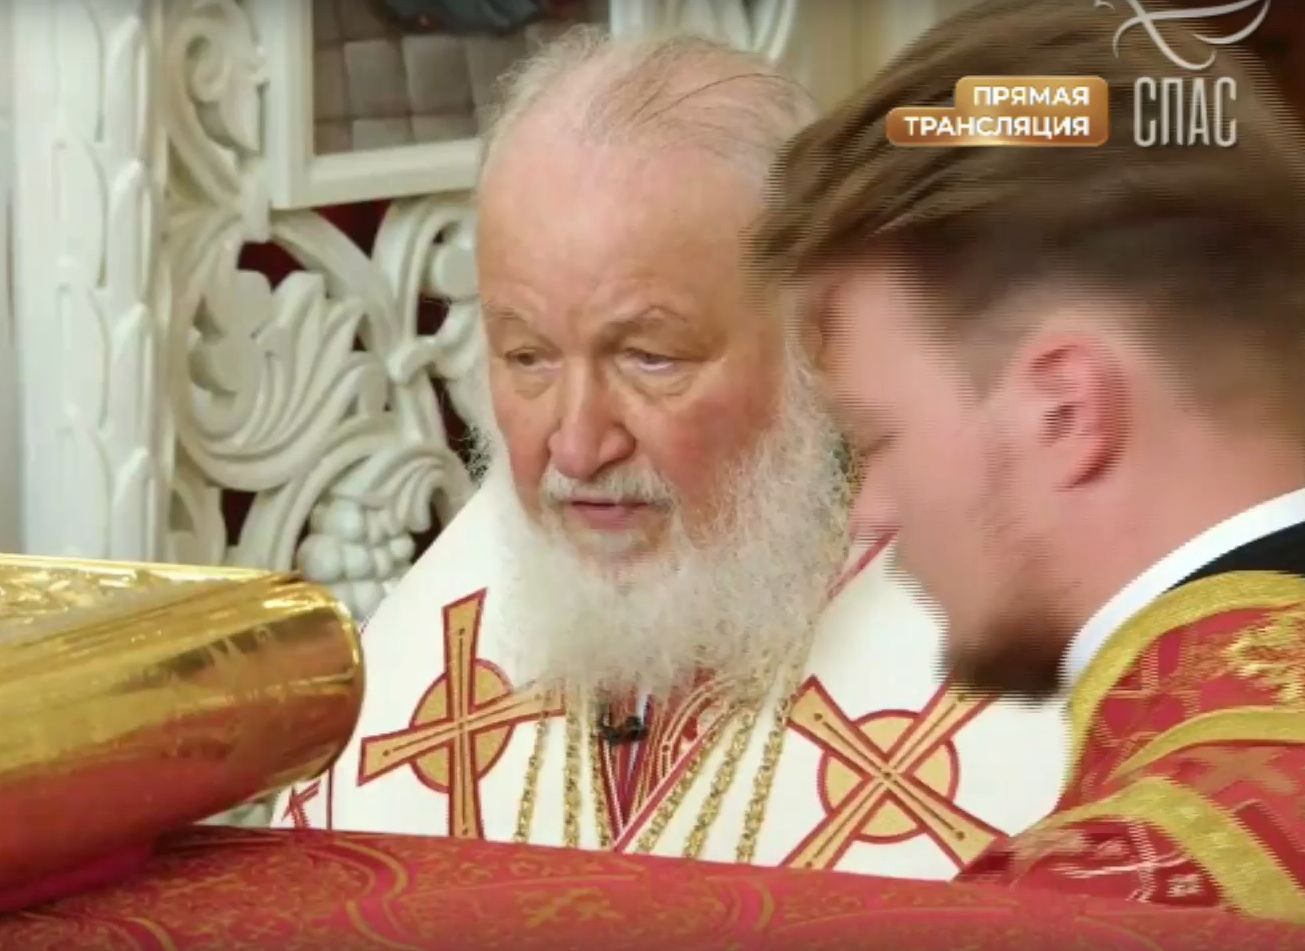 Телеканал «Спас» проводит прямую трансляцию освящения нового рязанского храма патриархом